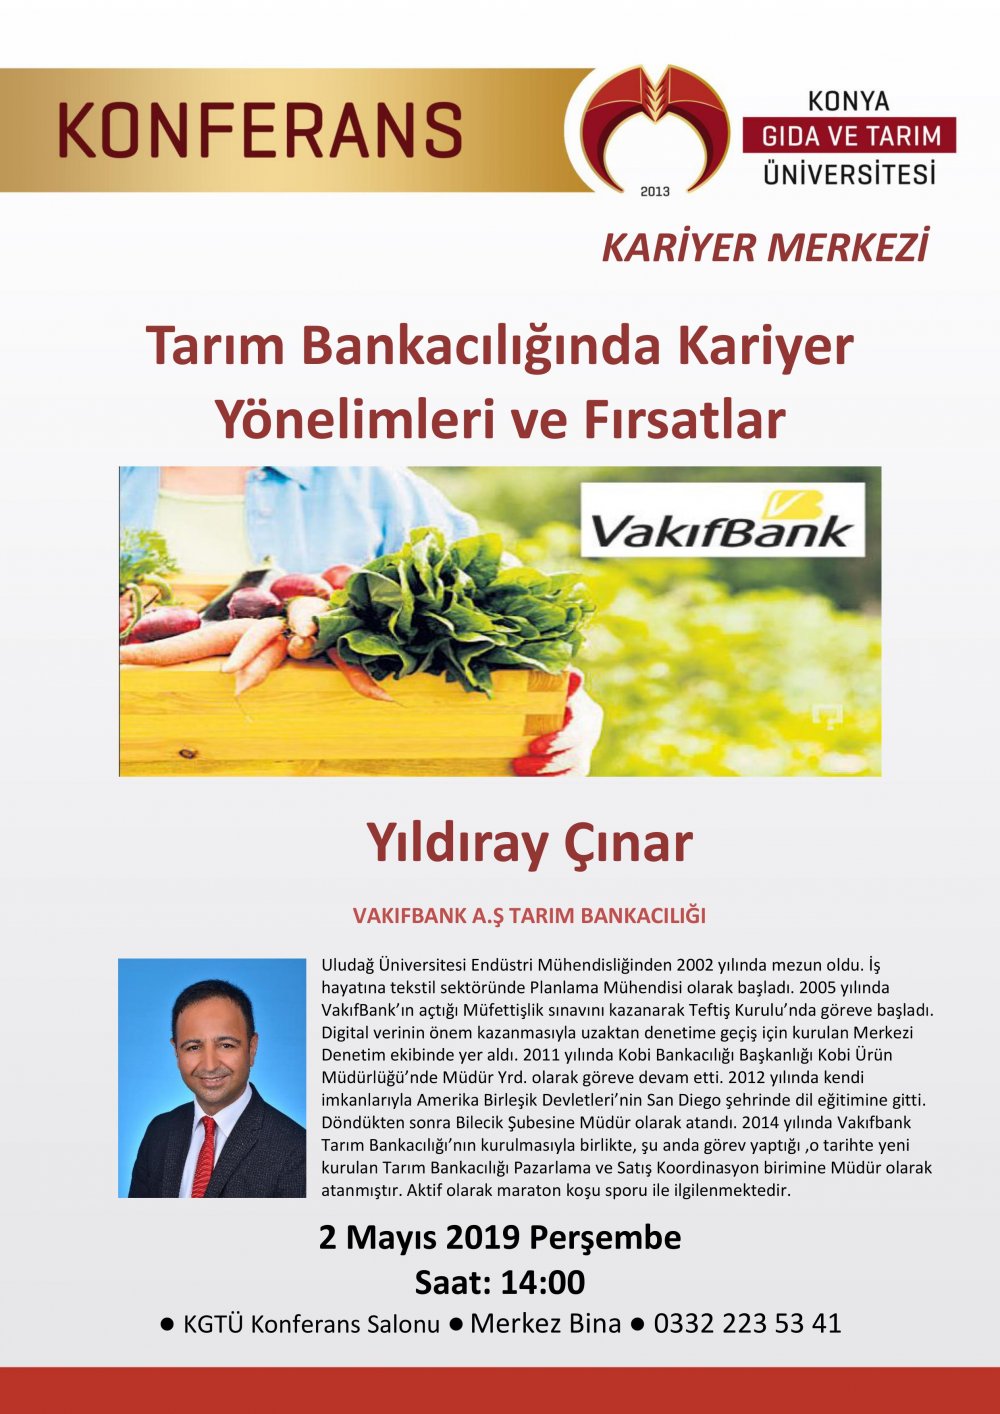 Konferans - Tarım Bankacılığında Kariyer Yönelimleri ve Fırsatlar / 2 Mayıs 2019 Perşembe